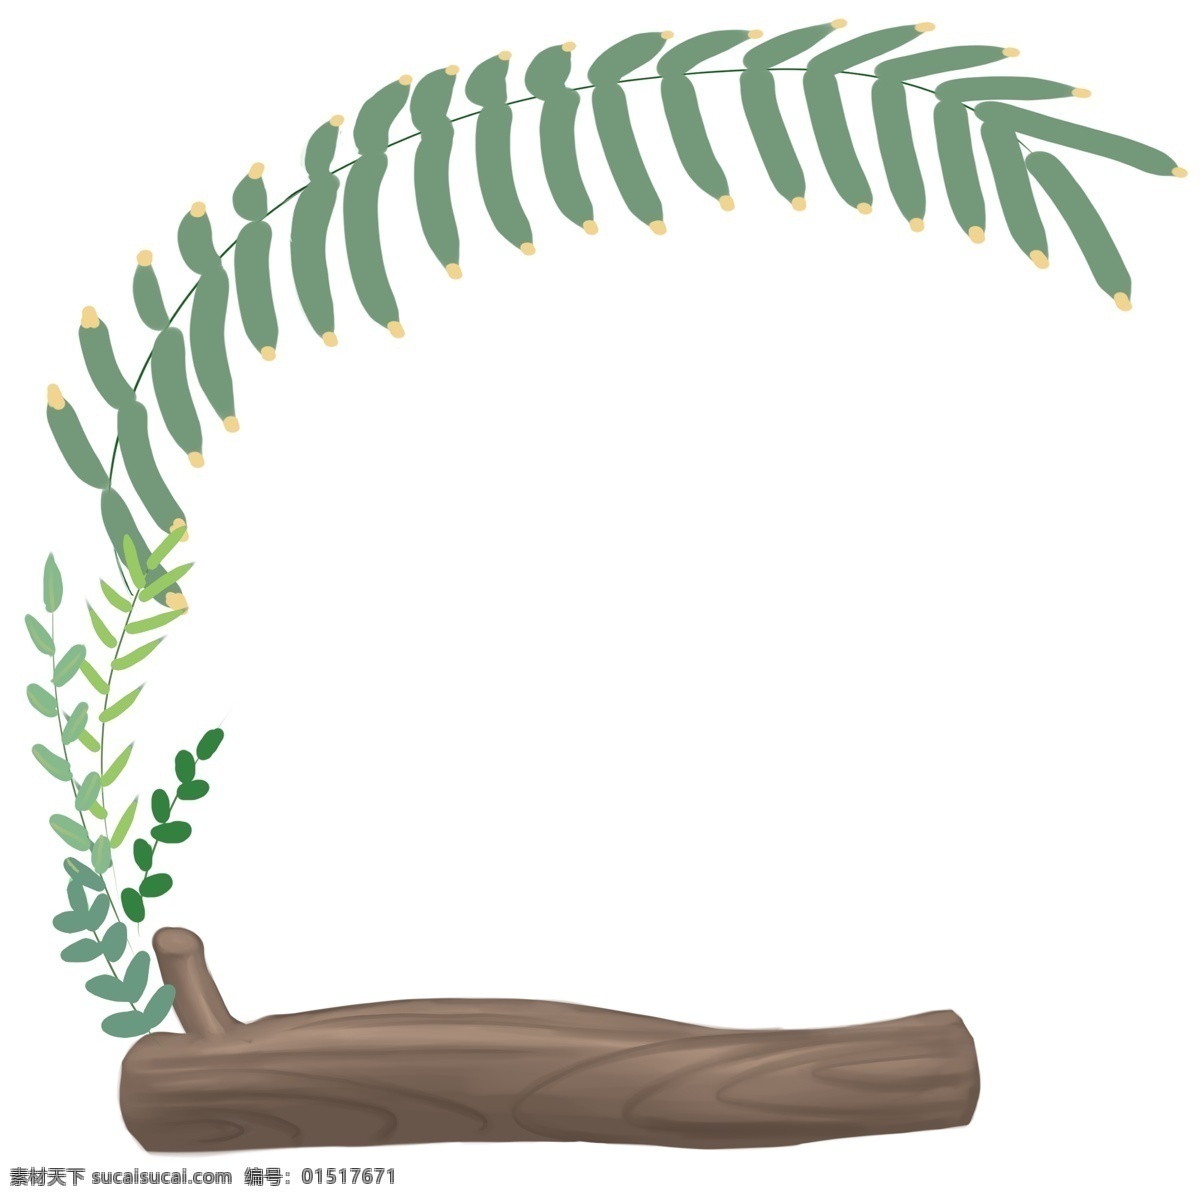 卡通 可爱 植物 边框 主题边框 平面设计 植物设计 背景设计 万物复苏 标志设计 树叶边框 装饰植物边框